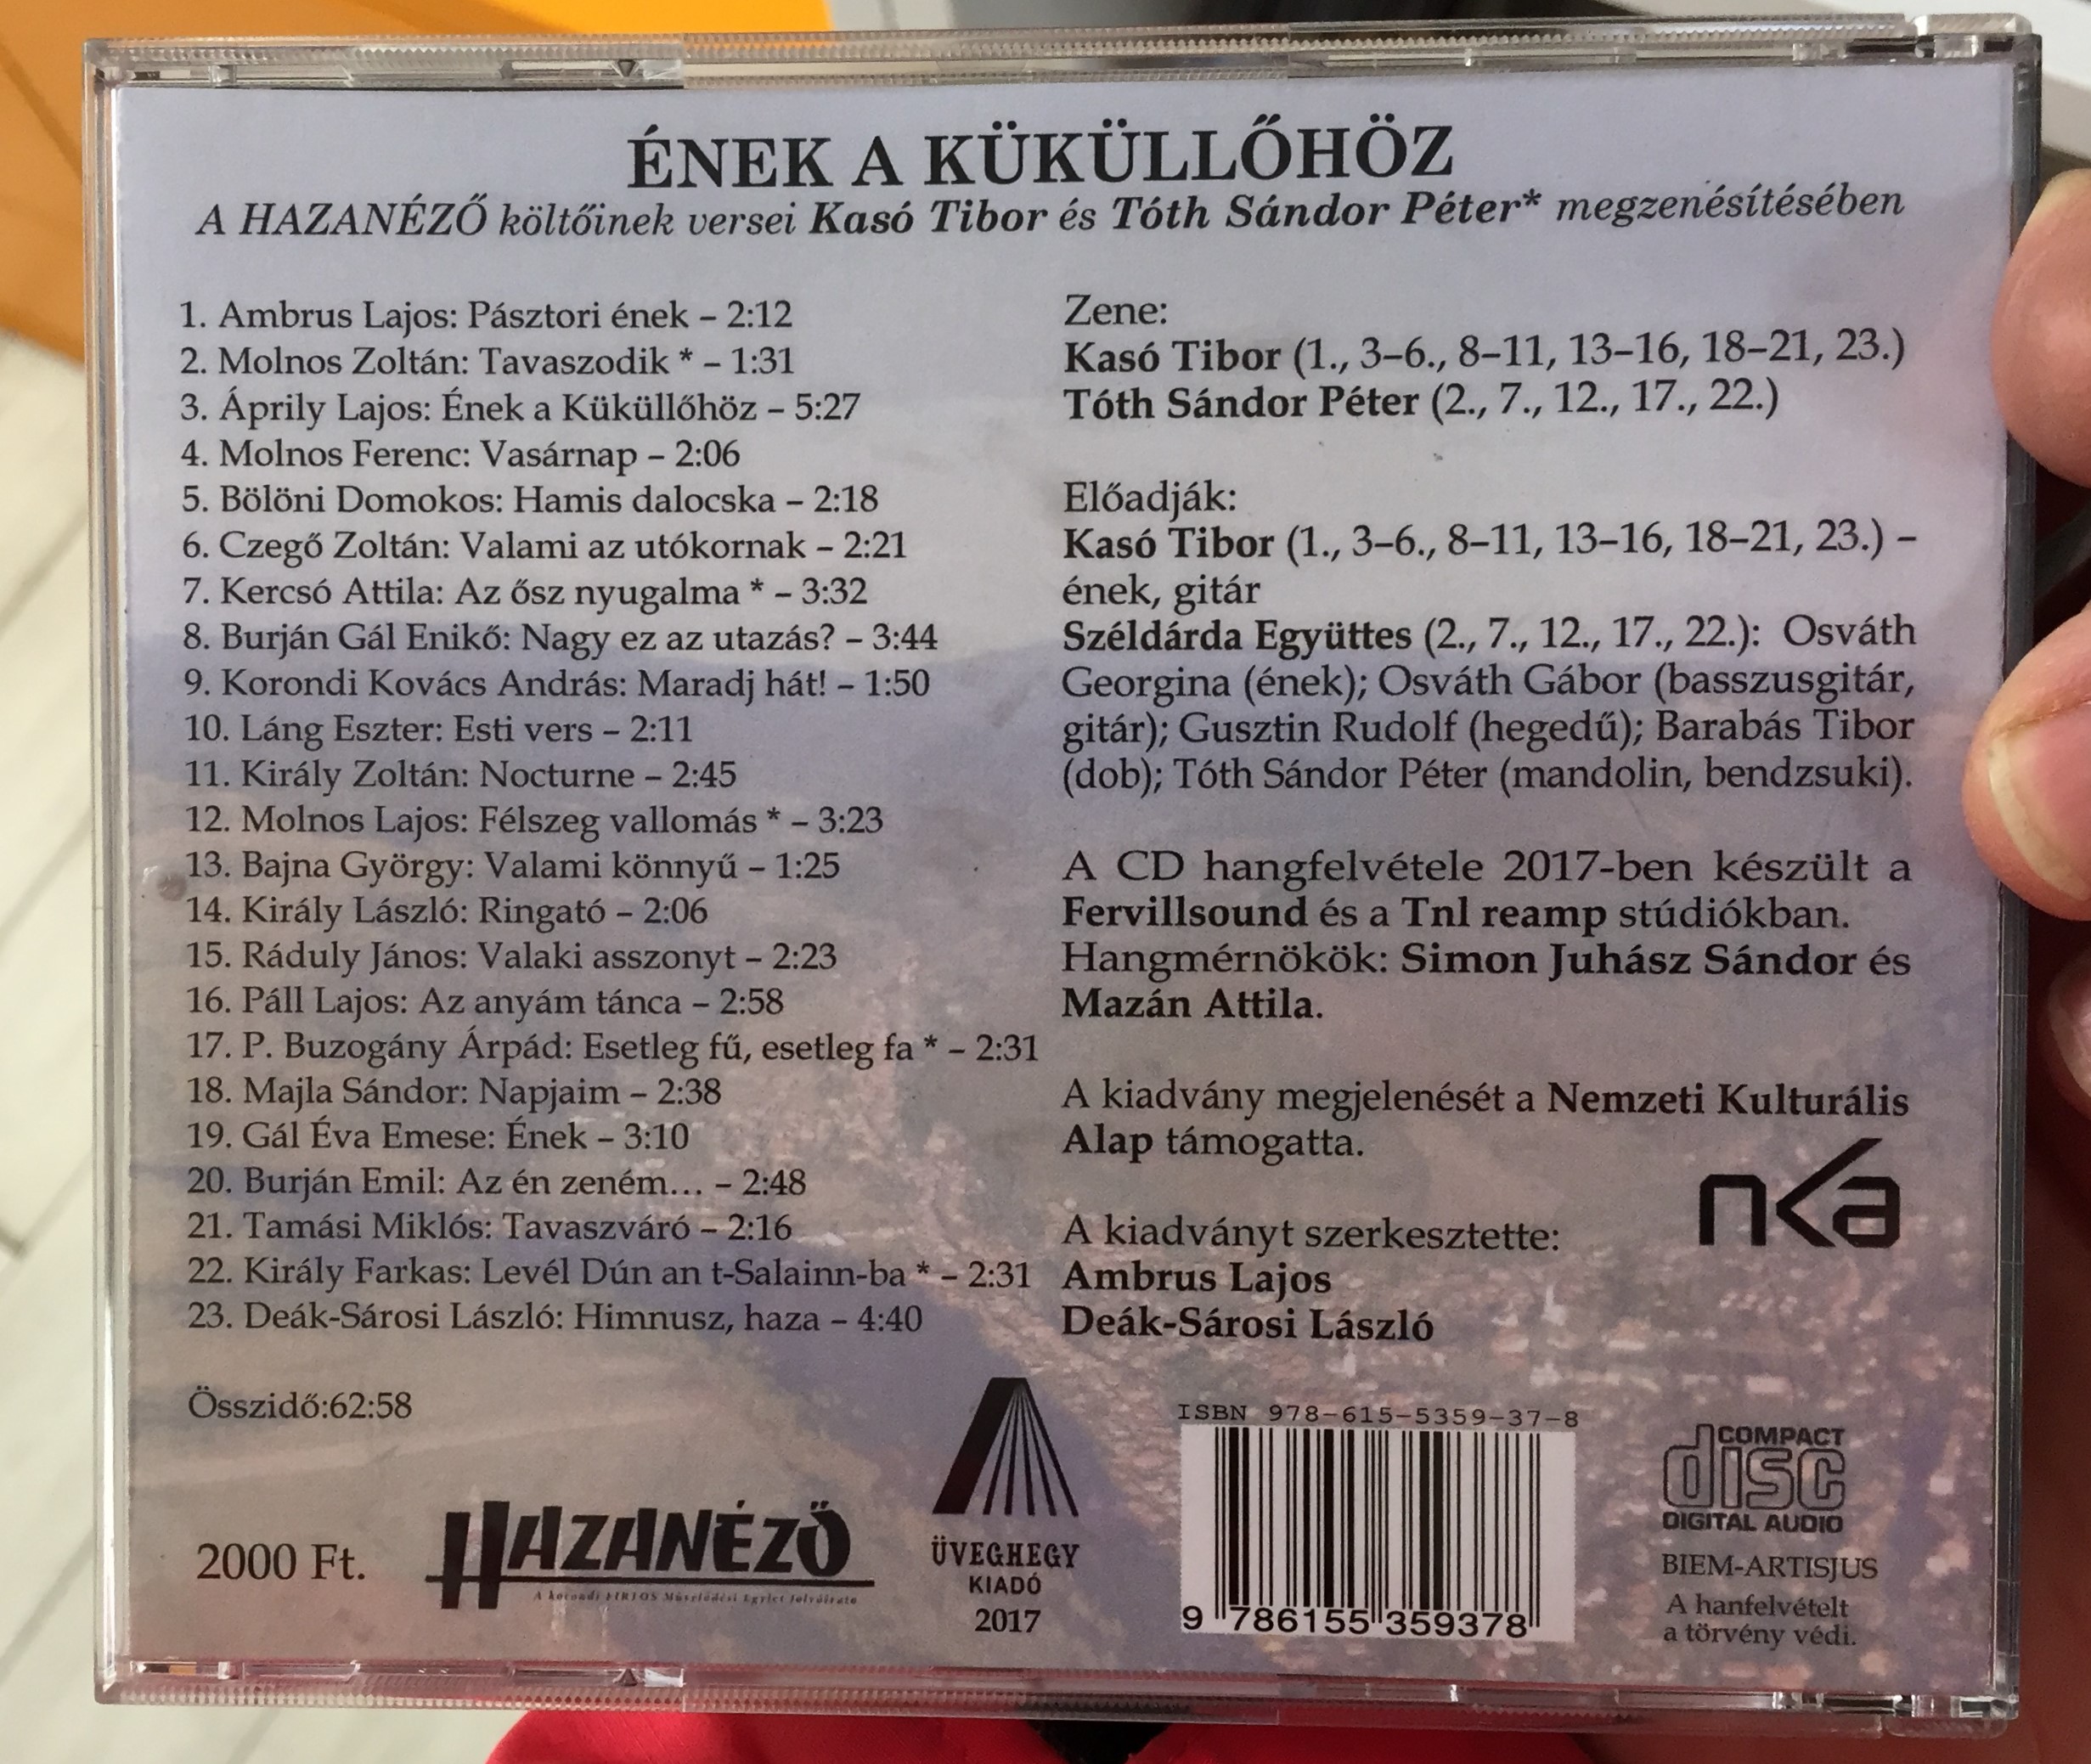 a-hazanezo-koltoinek-versei-nek-a-k-k-ll-h-z-kaso-tibor-es-toth-sandor-peter-megzenesiteseben-uveghegy-kiado-audio-cd-2017-isbn-978-615-5359-37-8-2-.jpg